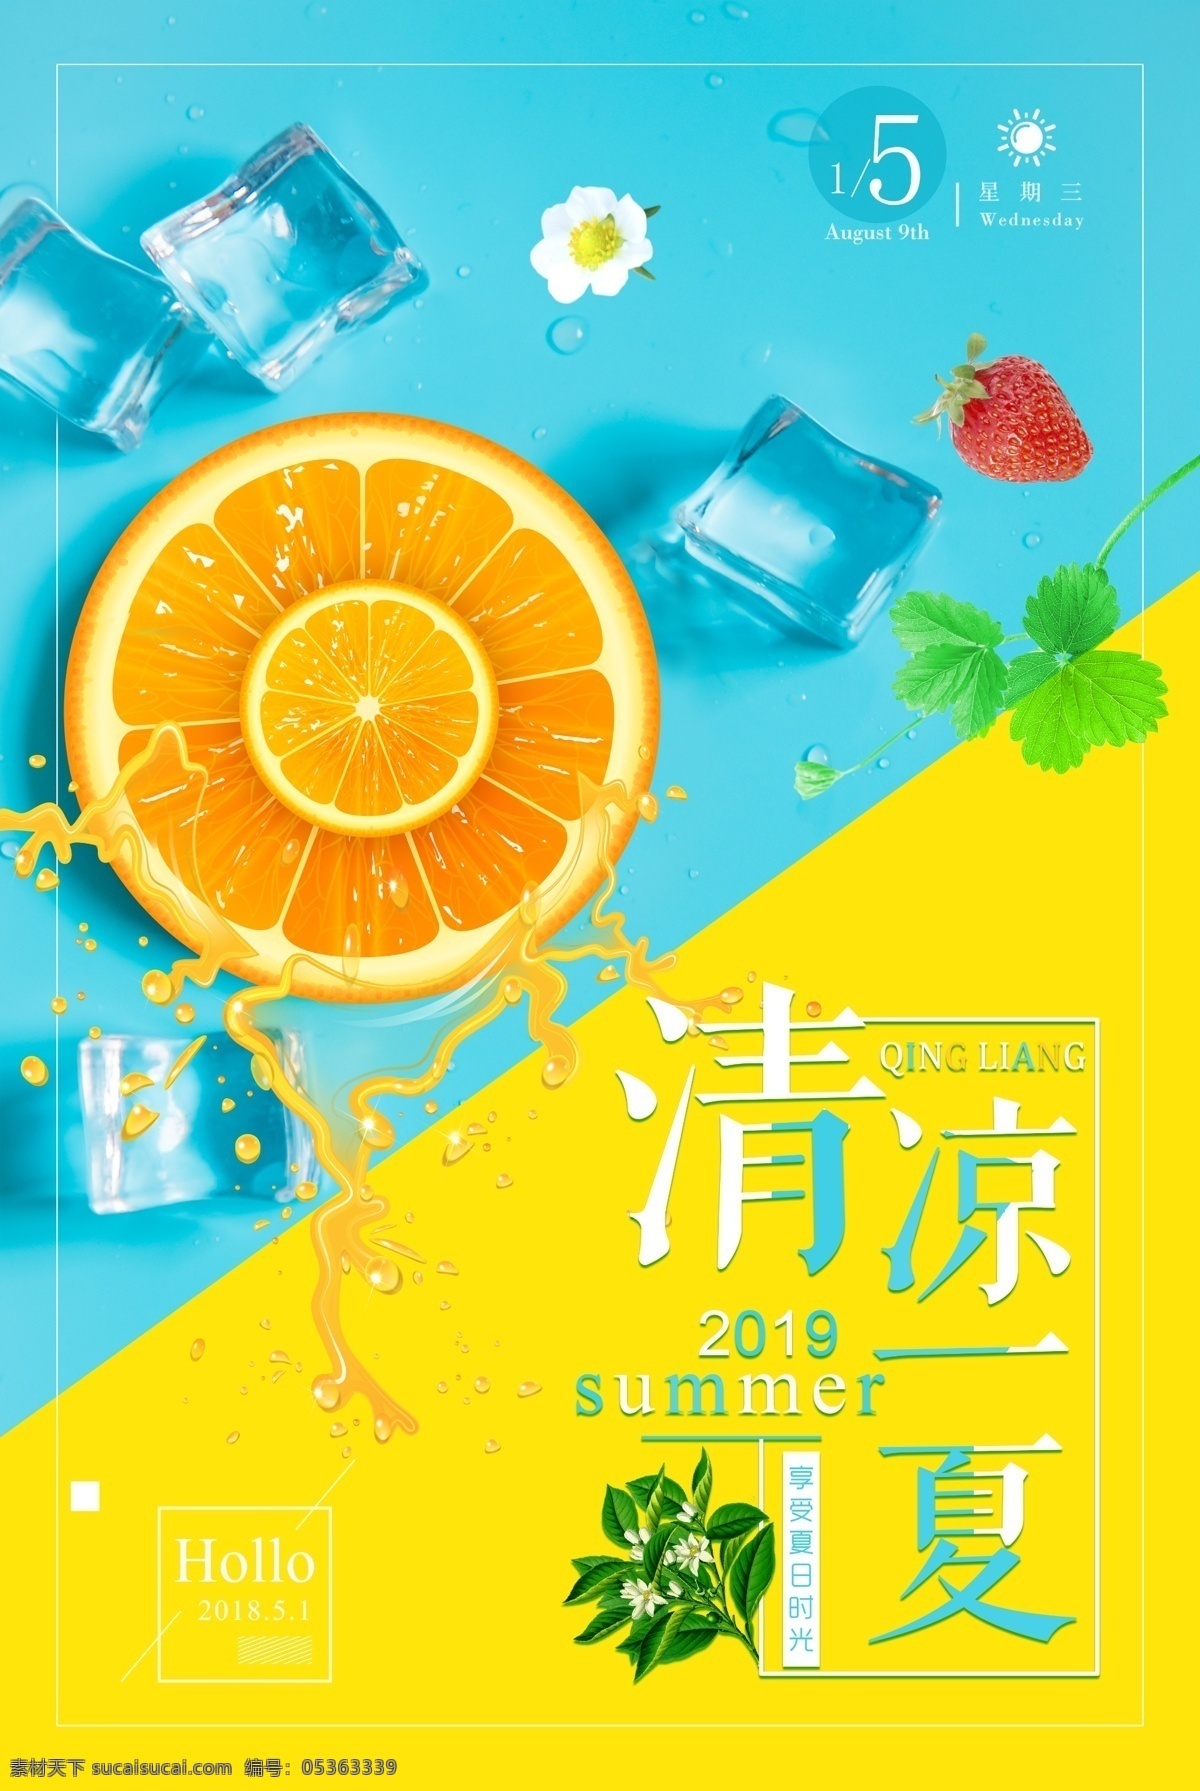 清凉一夏海报 清爽海报 冰块模版 蓝色黄色 冰镇饮料